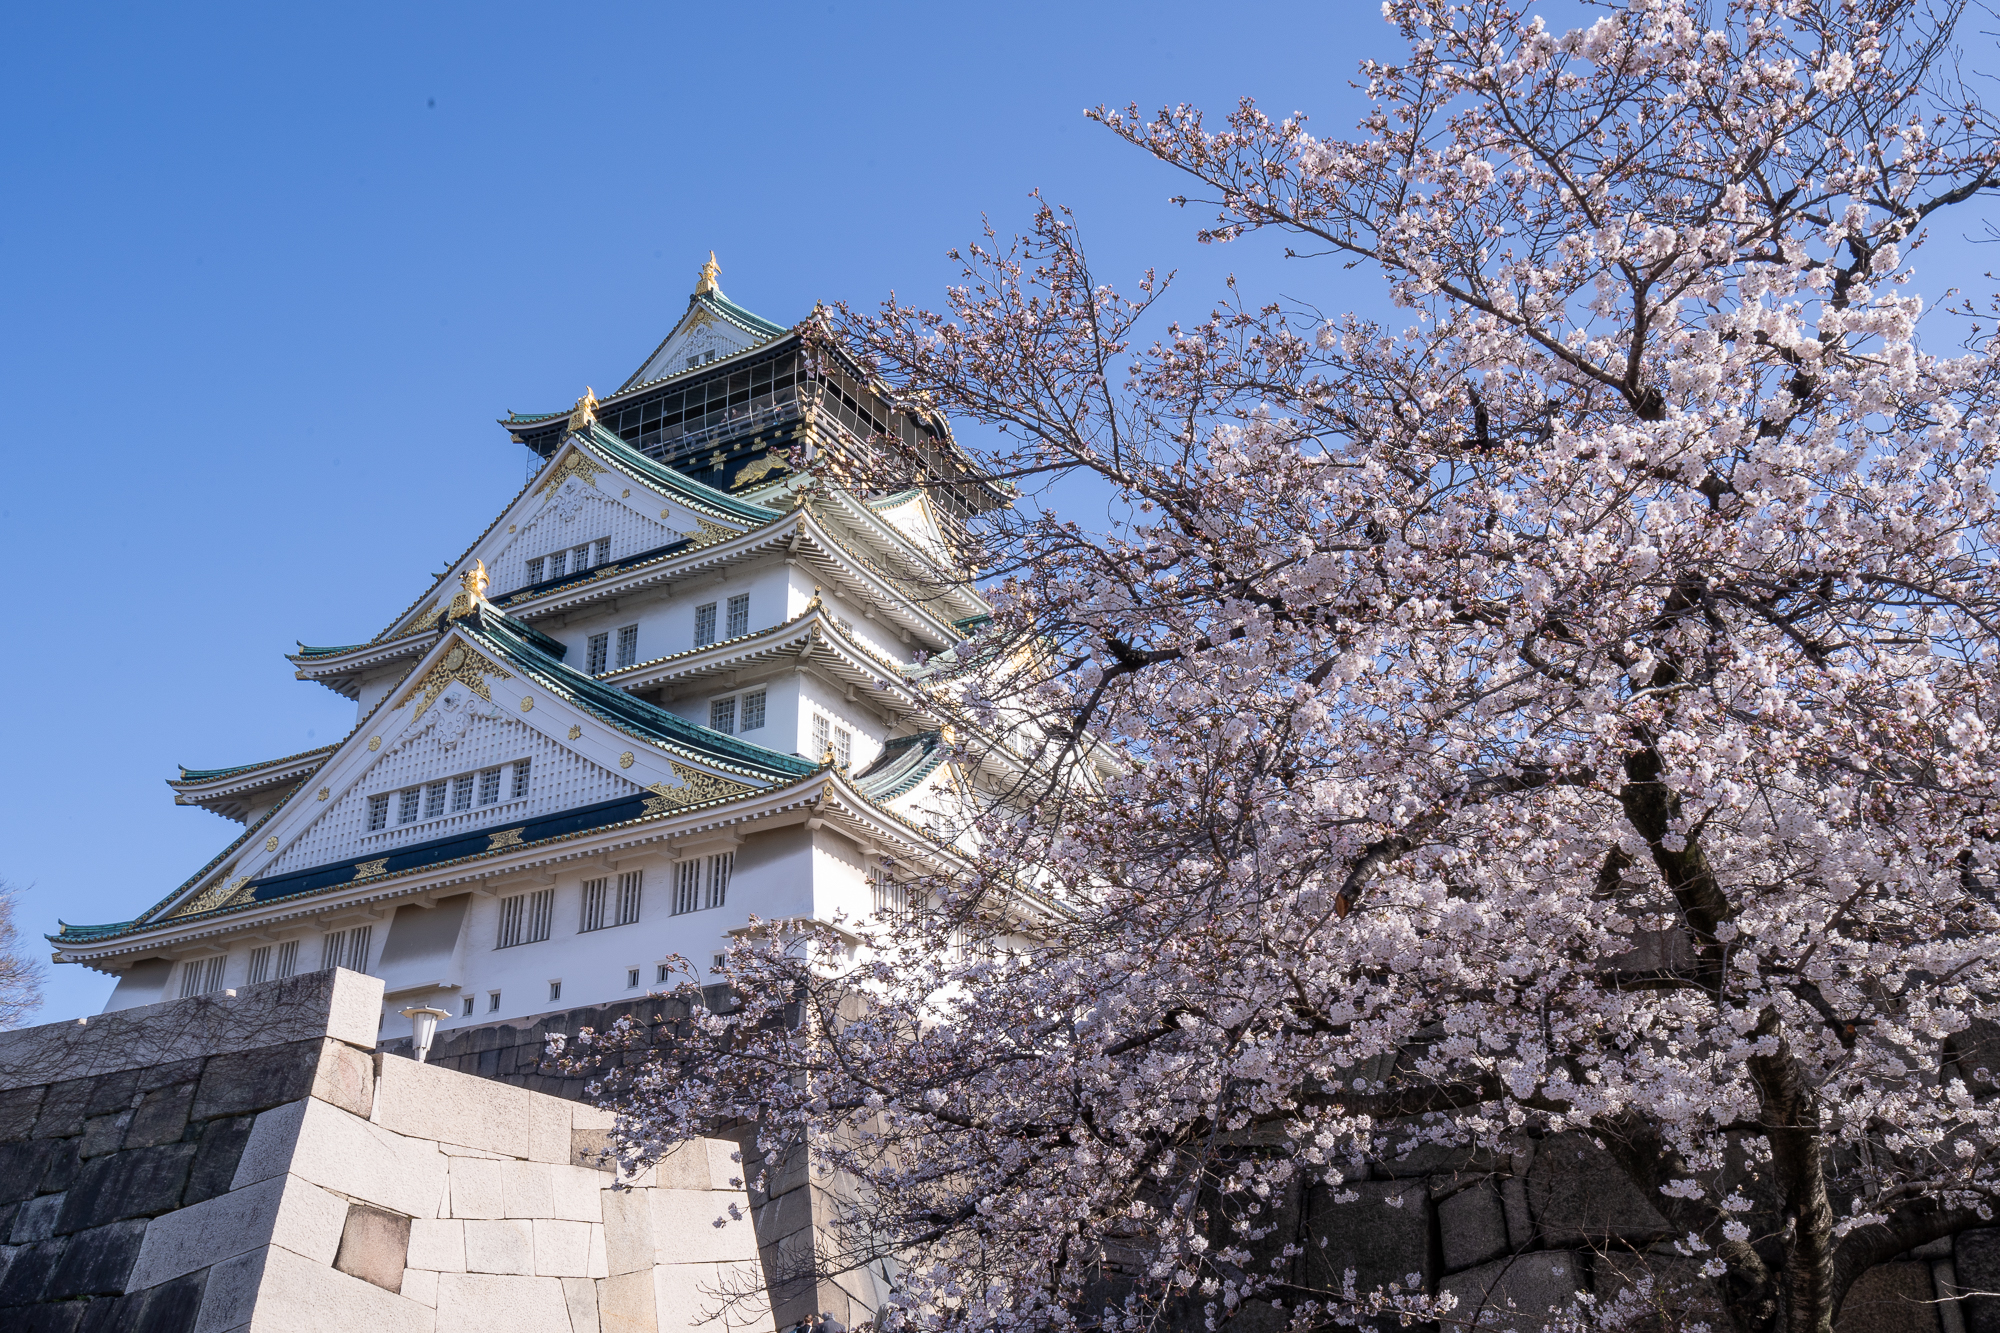 大阪城公園 桜 22年の開花情報 見ごろとアクセス方法について